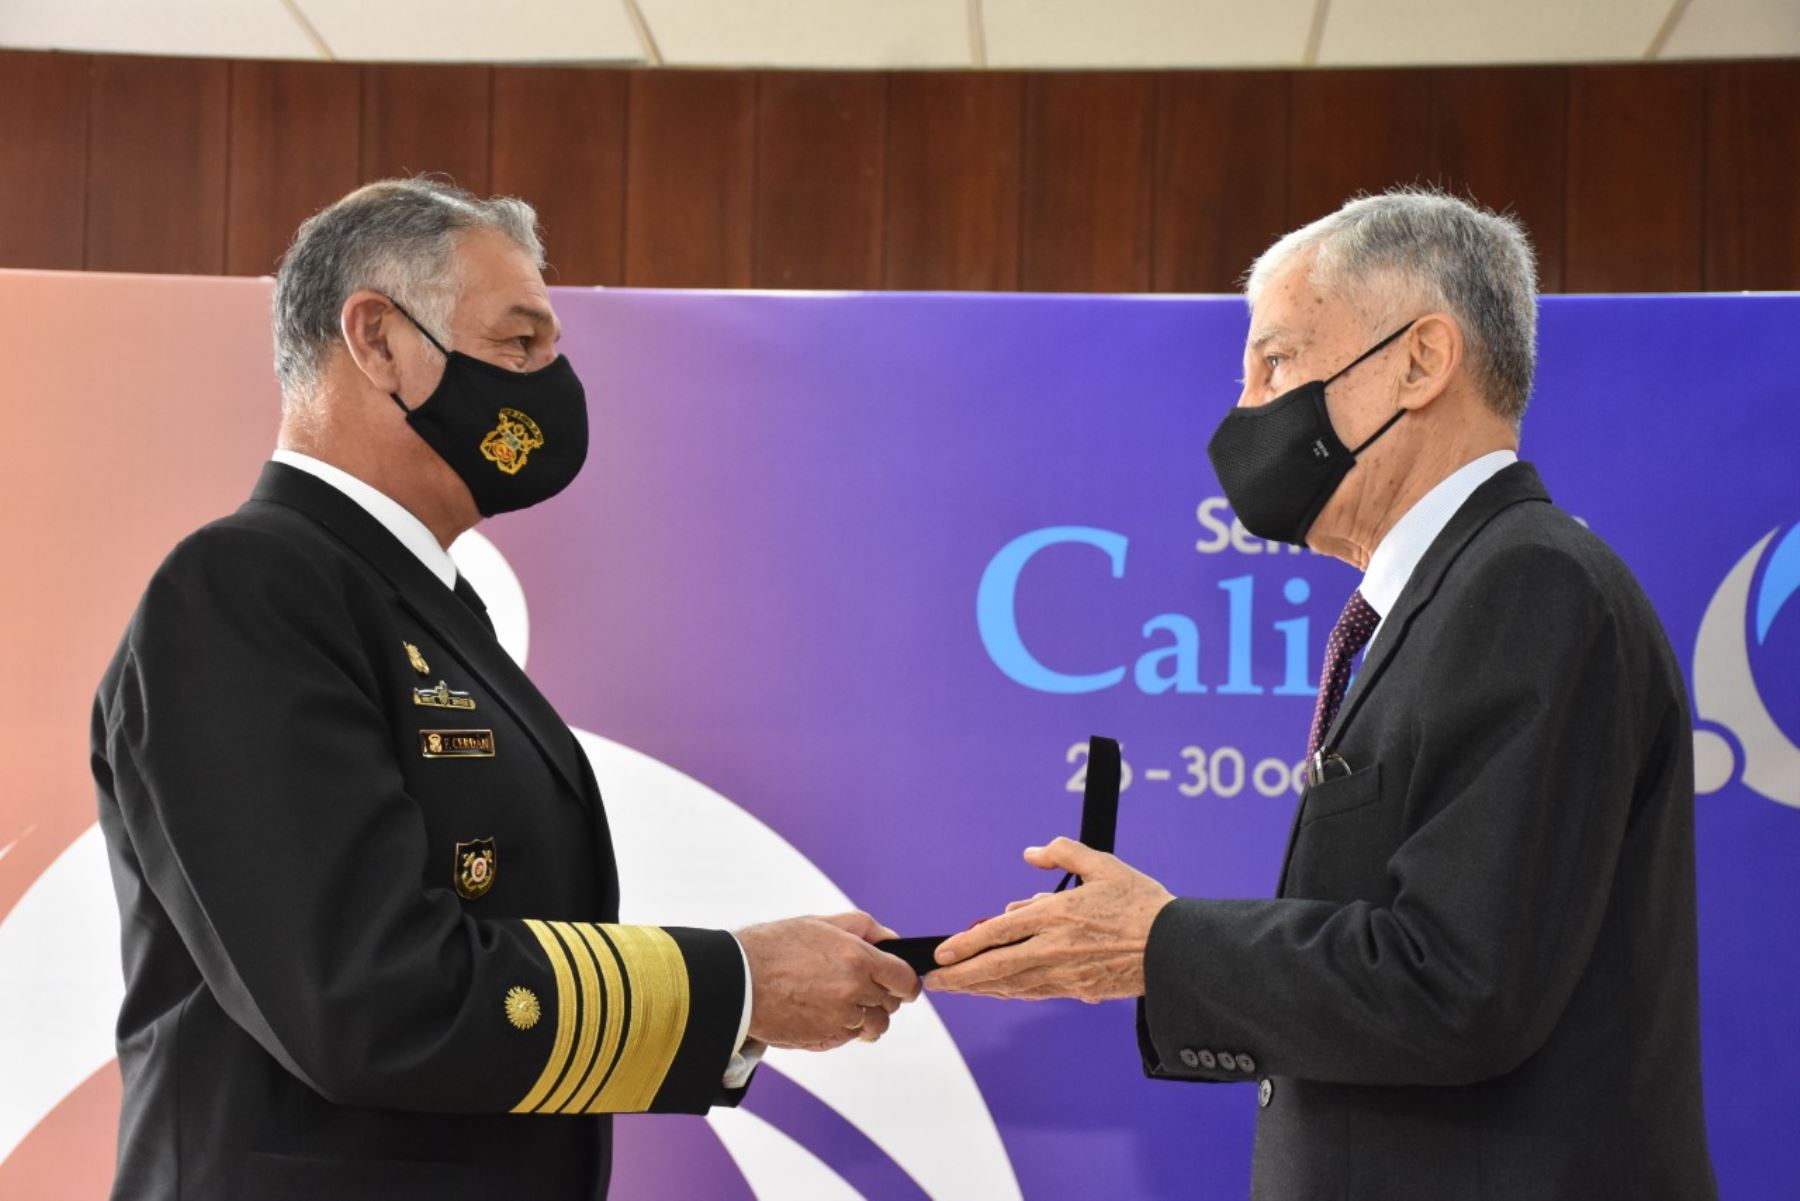 Marina de Guerra del Perú recibió el “Premio Nacional a la Calidad” y la medalla Líder en Calidad categoría Oro. Foto: Marina de Guerra del Perú